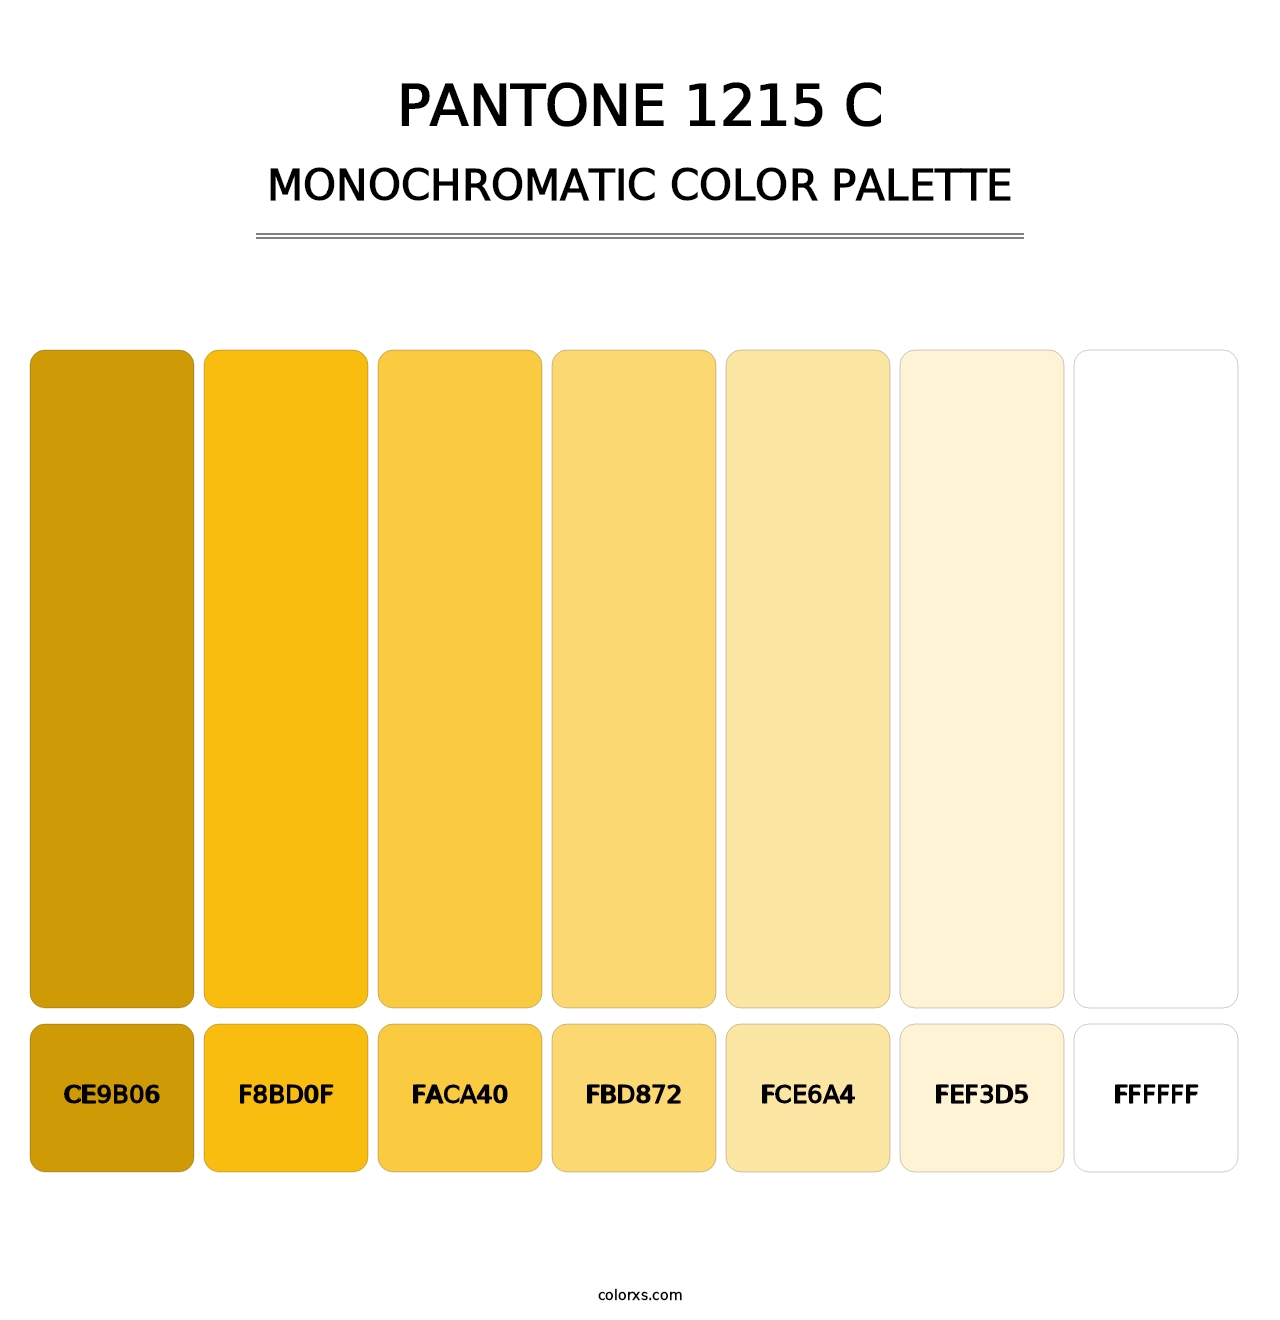 PANTONE 1215 C - Monochromatic Color Palette